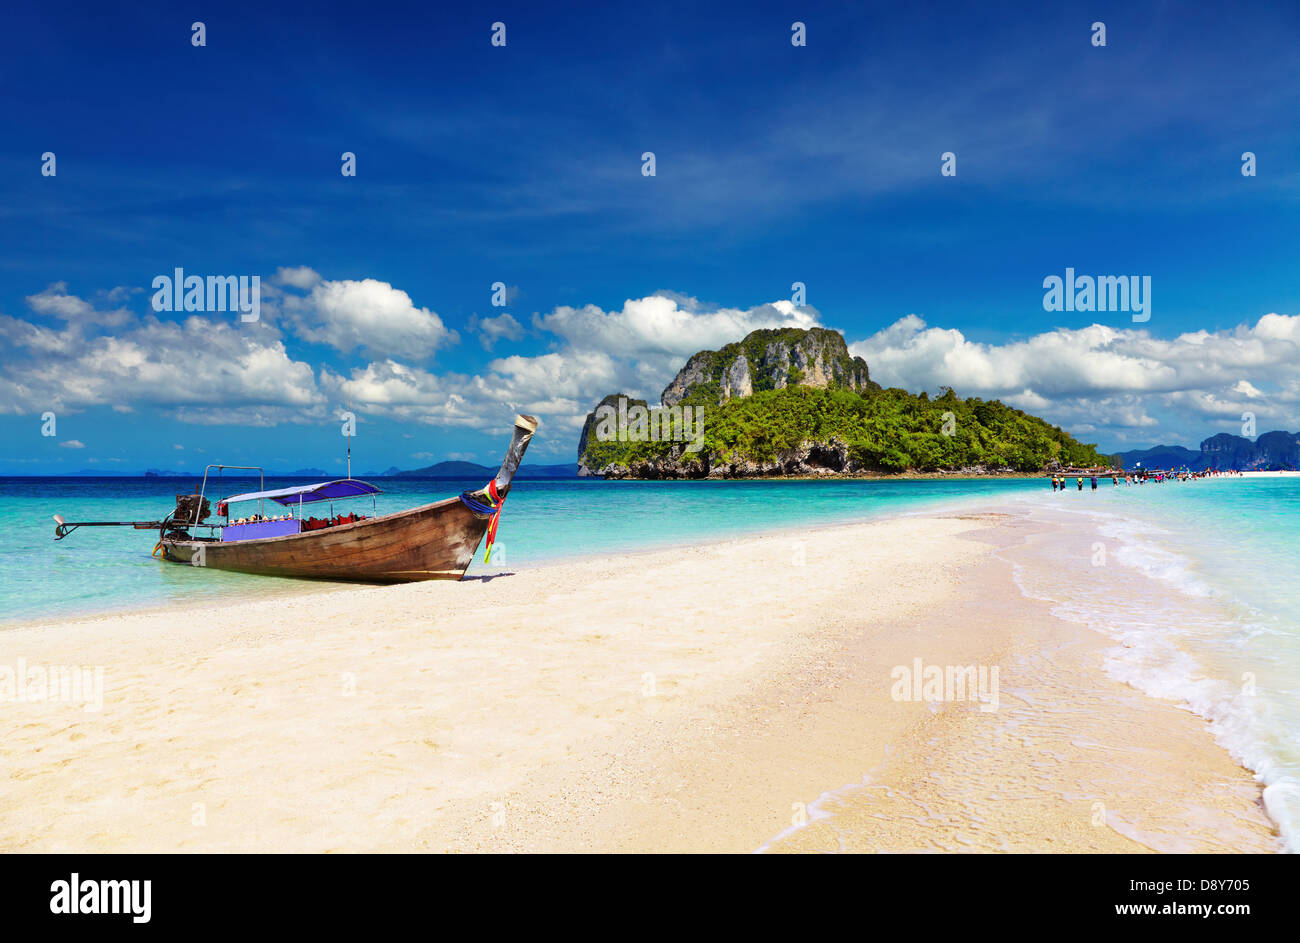 Spiaggia tropicale vasca, Isola, Mare delle Andamane, Thailandia Foto Stock